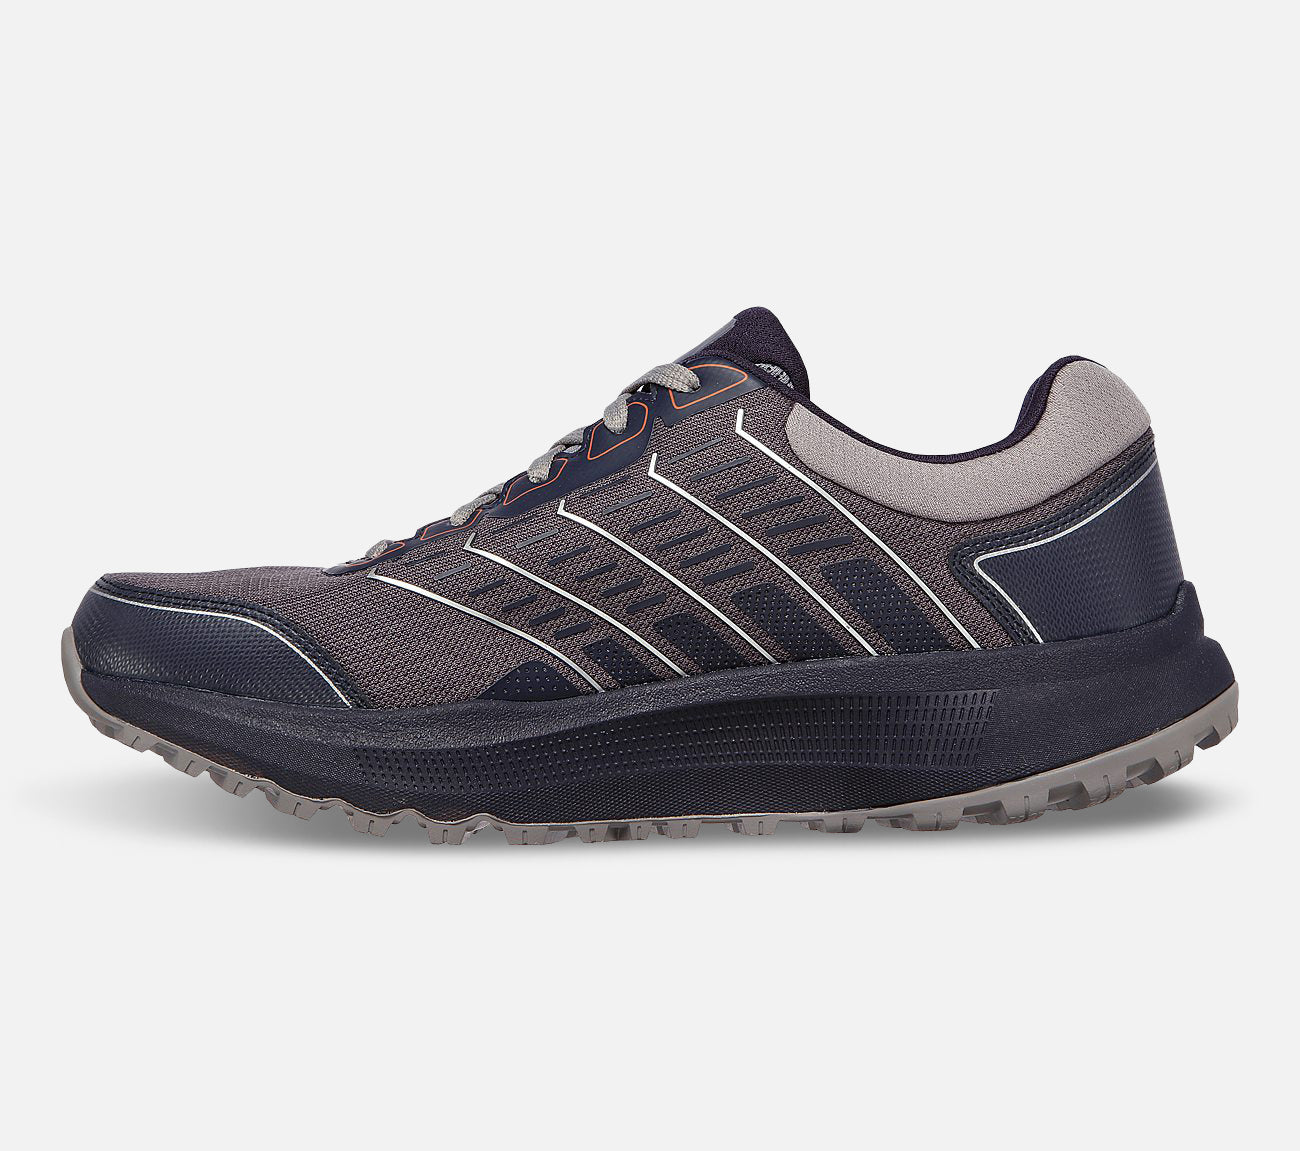 GO RUN Pulse Trail - Swift Range - Waterproof Shoe Skechers